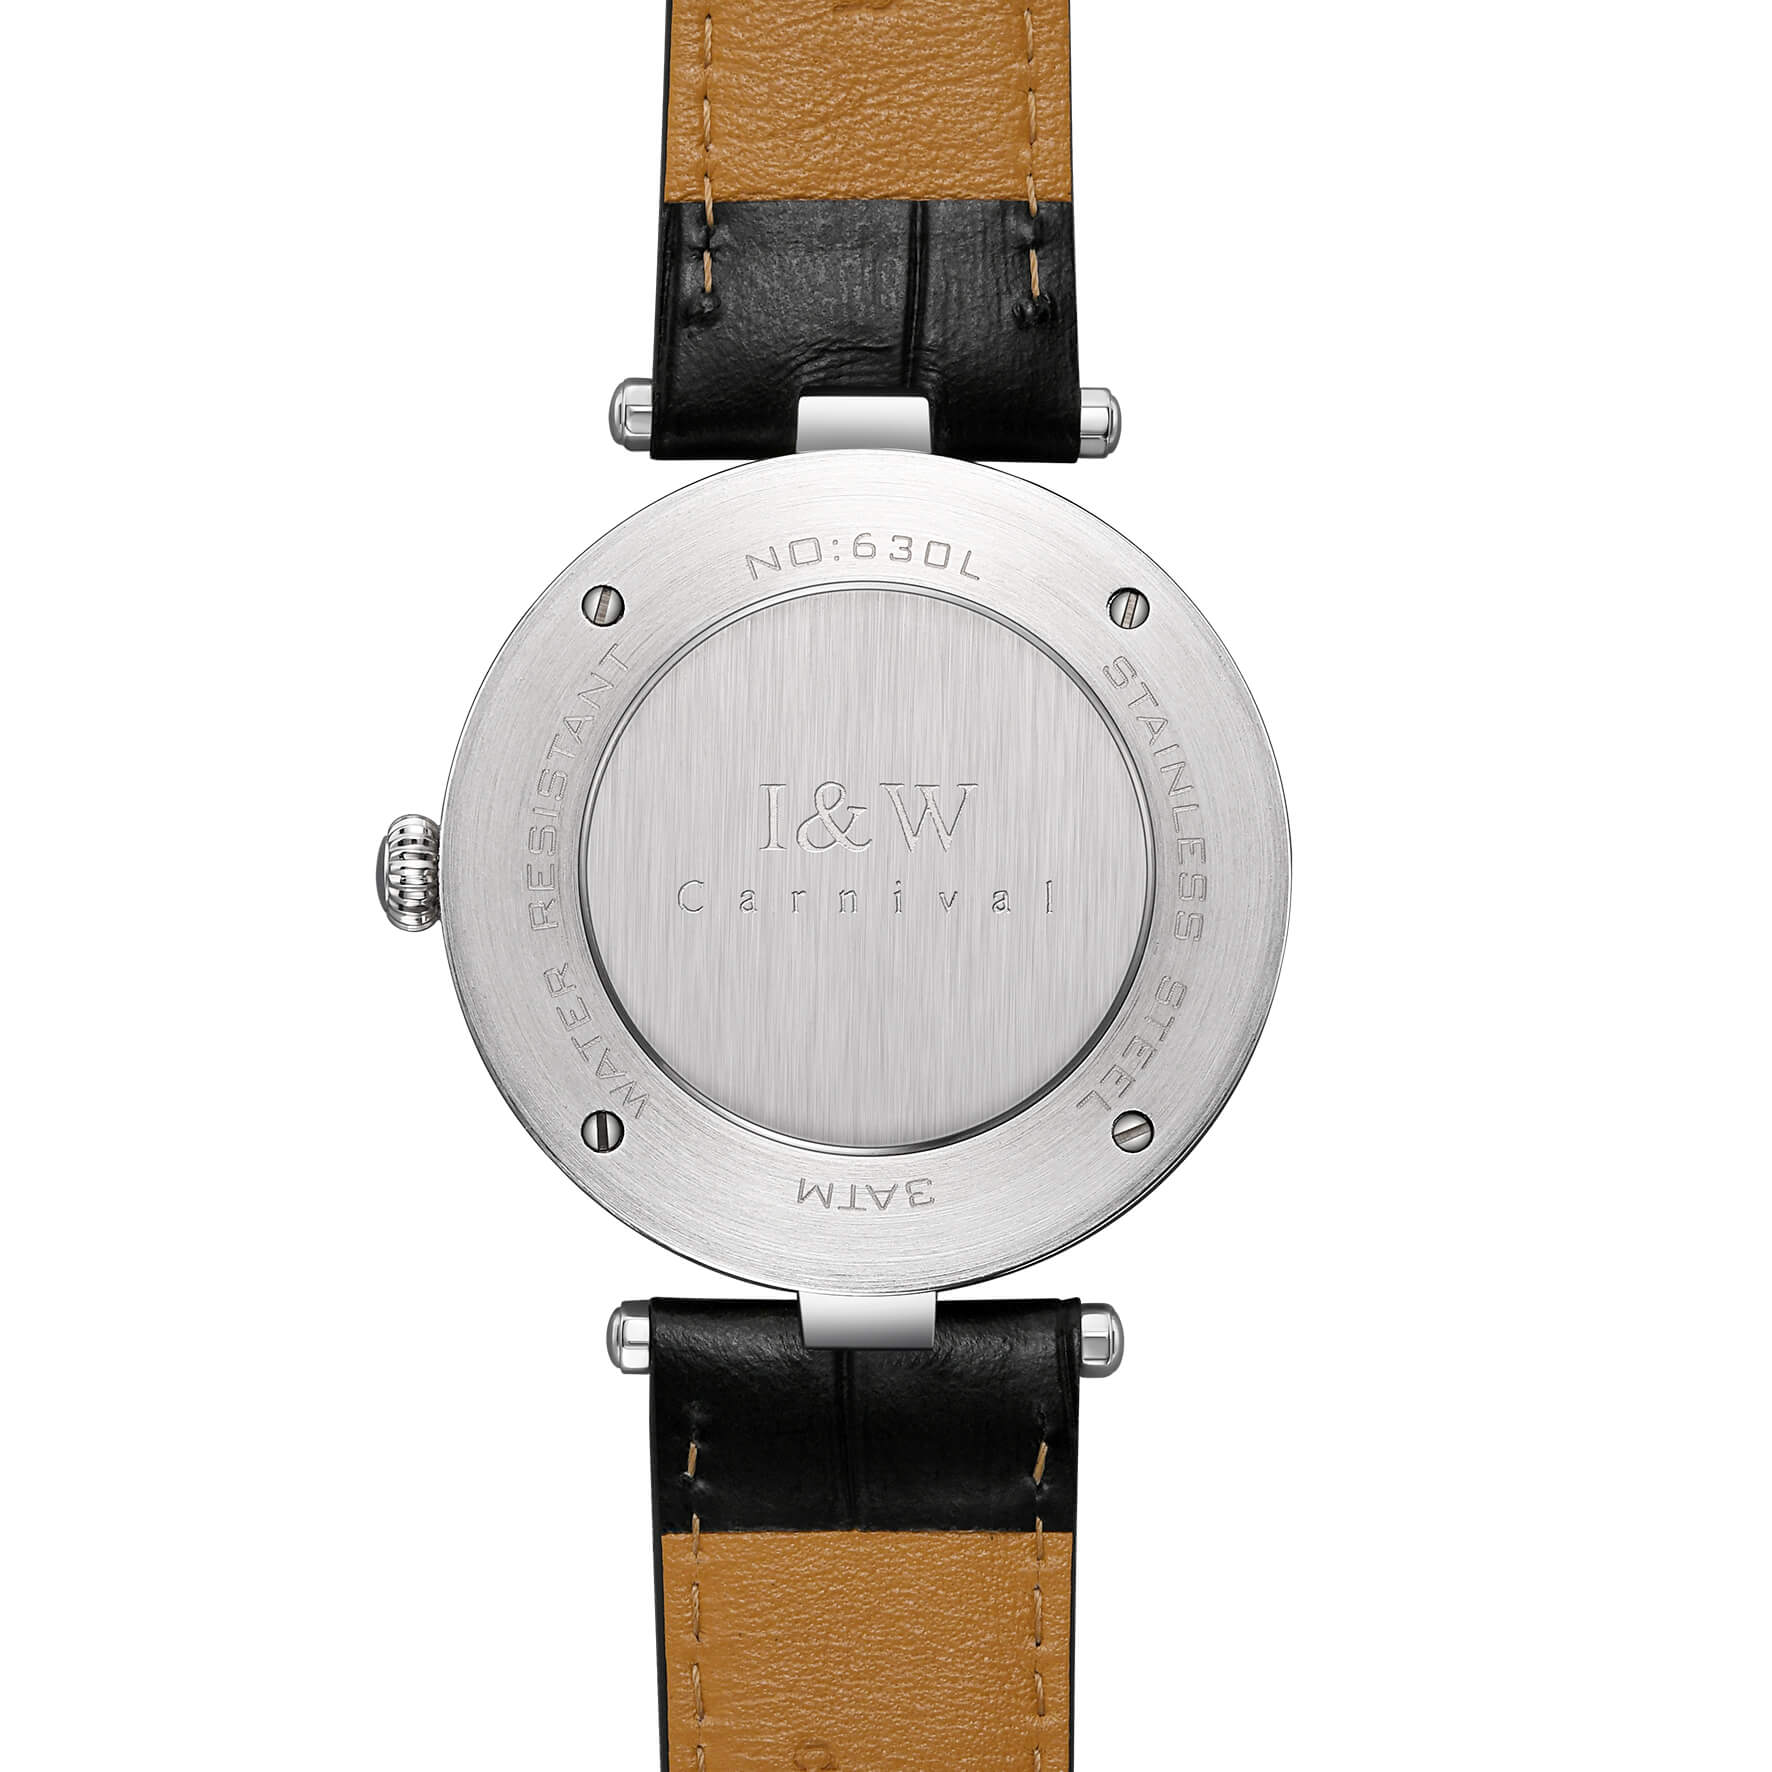 Đồng hồ nữ chính hãng IW CARNIVAL IW630L-1 Kính sapphire ,chống xước ,Chống nước 30m ,Bảo hành 24 tháng,Máy điện tử (pin),dây da cao cấp, thiết kế đơn giản dễ đeo